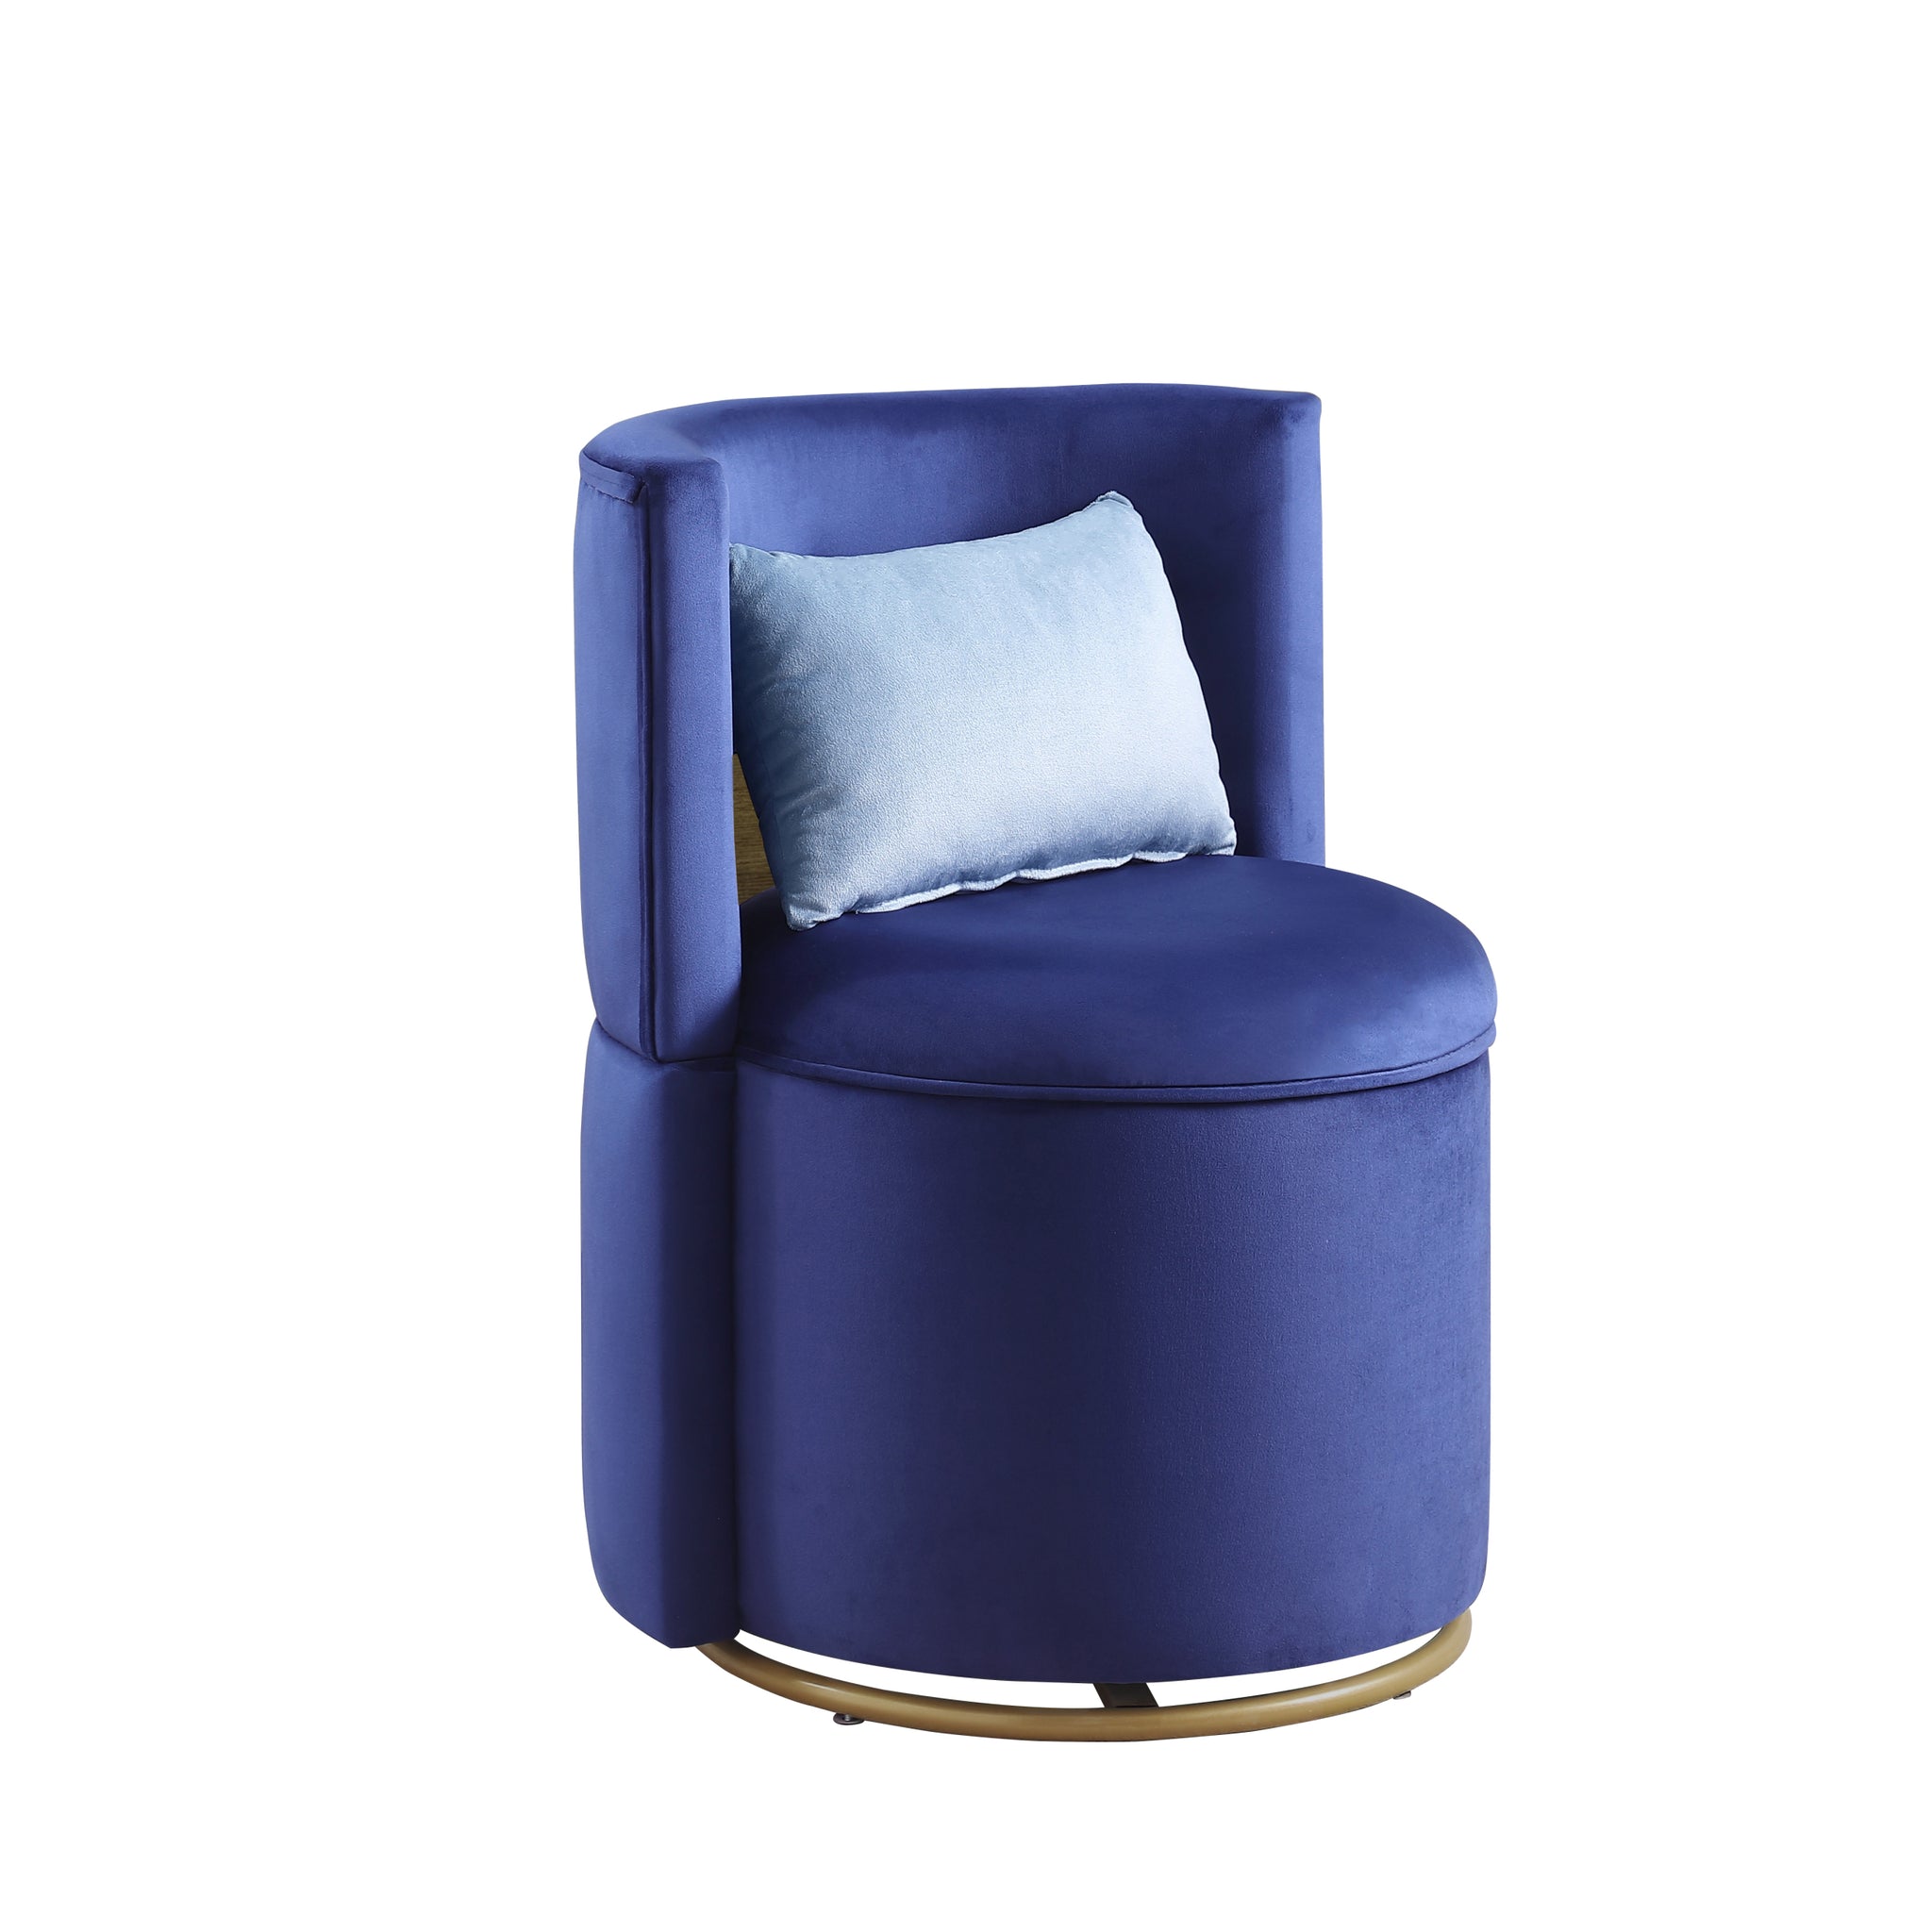 360 Swivel Accent Chair with Storage Function, Velvet blue-velvet